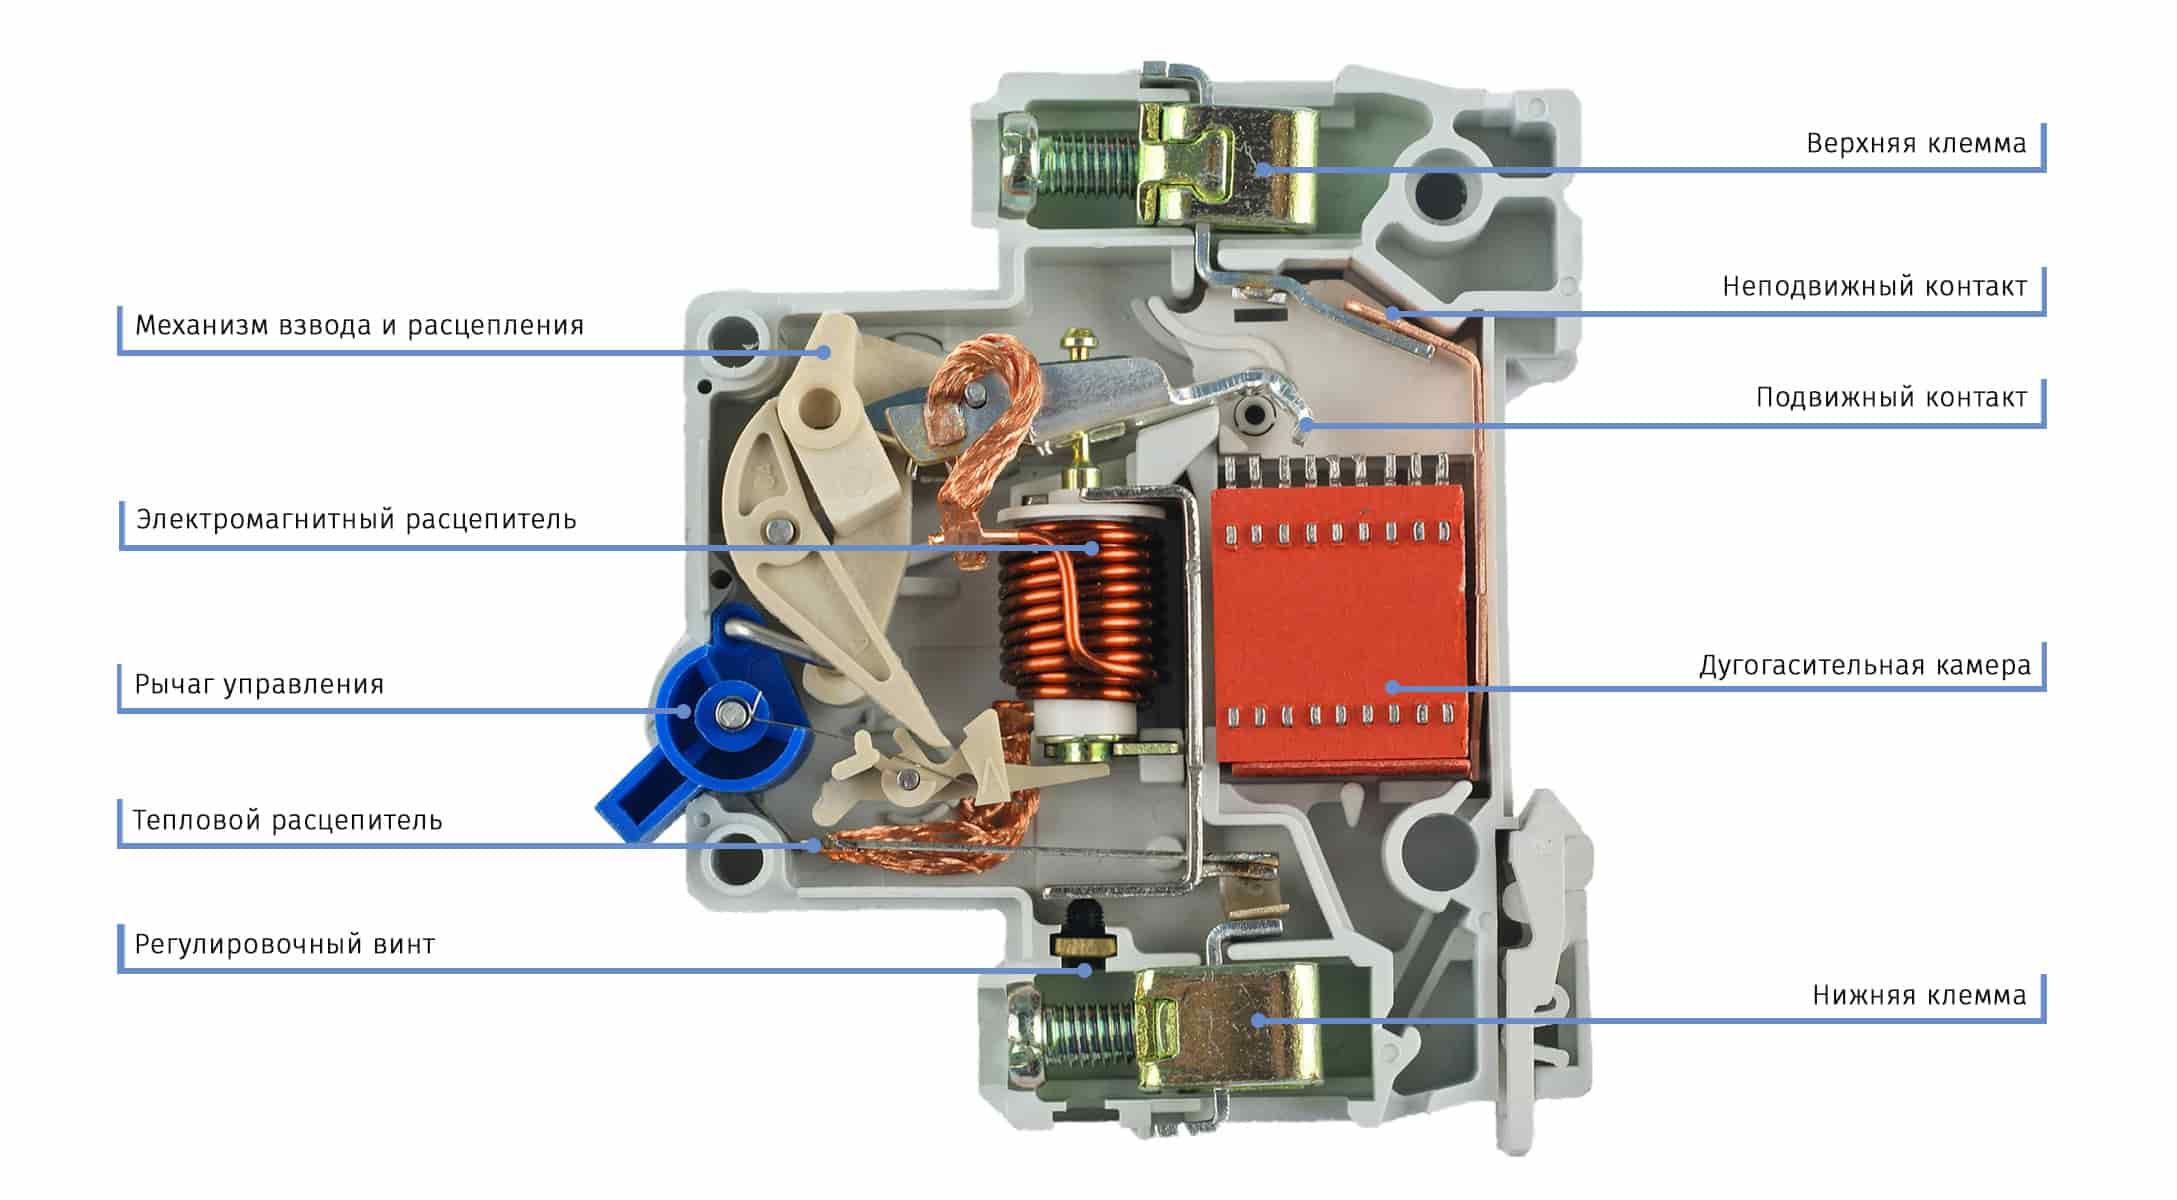 Пакетний вимикач – види, пріміененіе, конструкція, принцип роботи і підключення